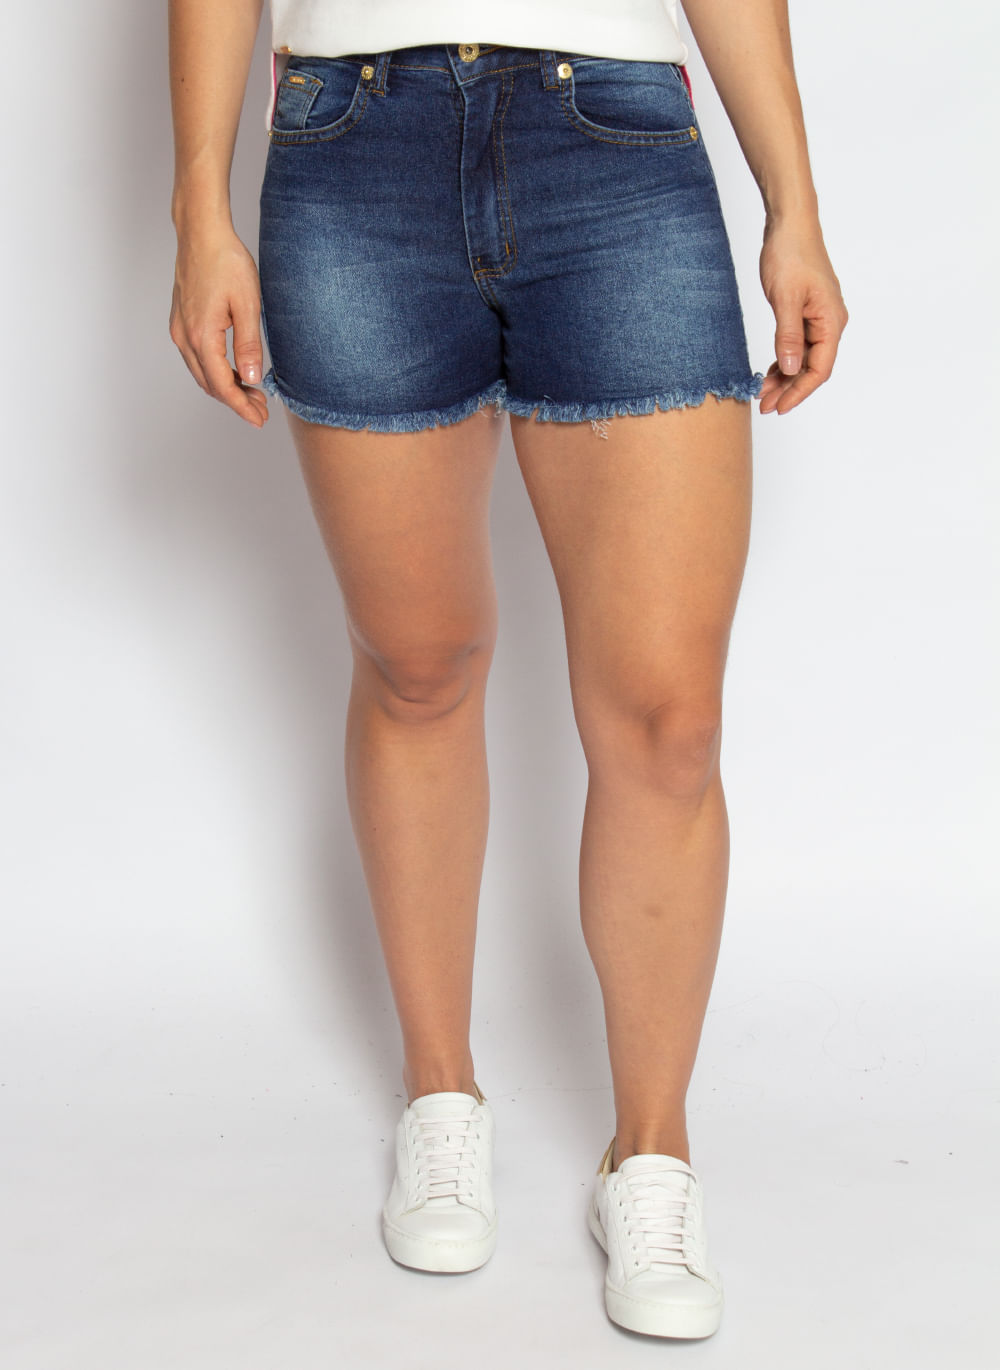 shorts-jeans-feminino-aleatory-power-modelo-2021-1-